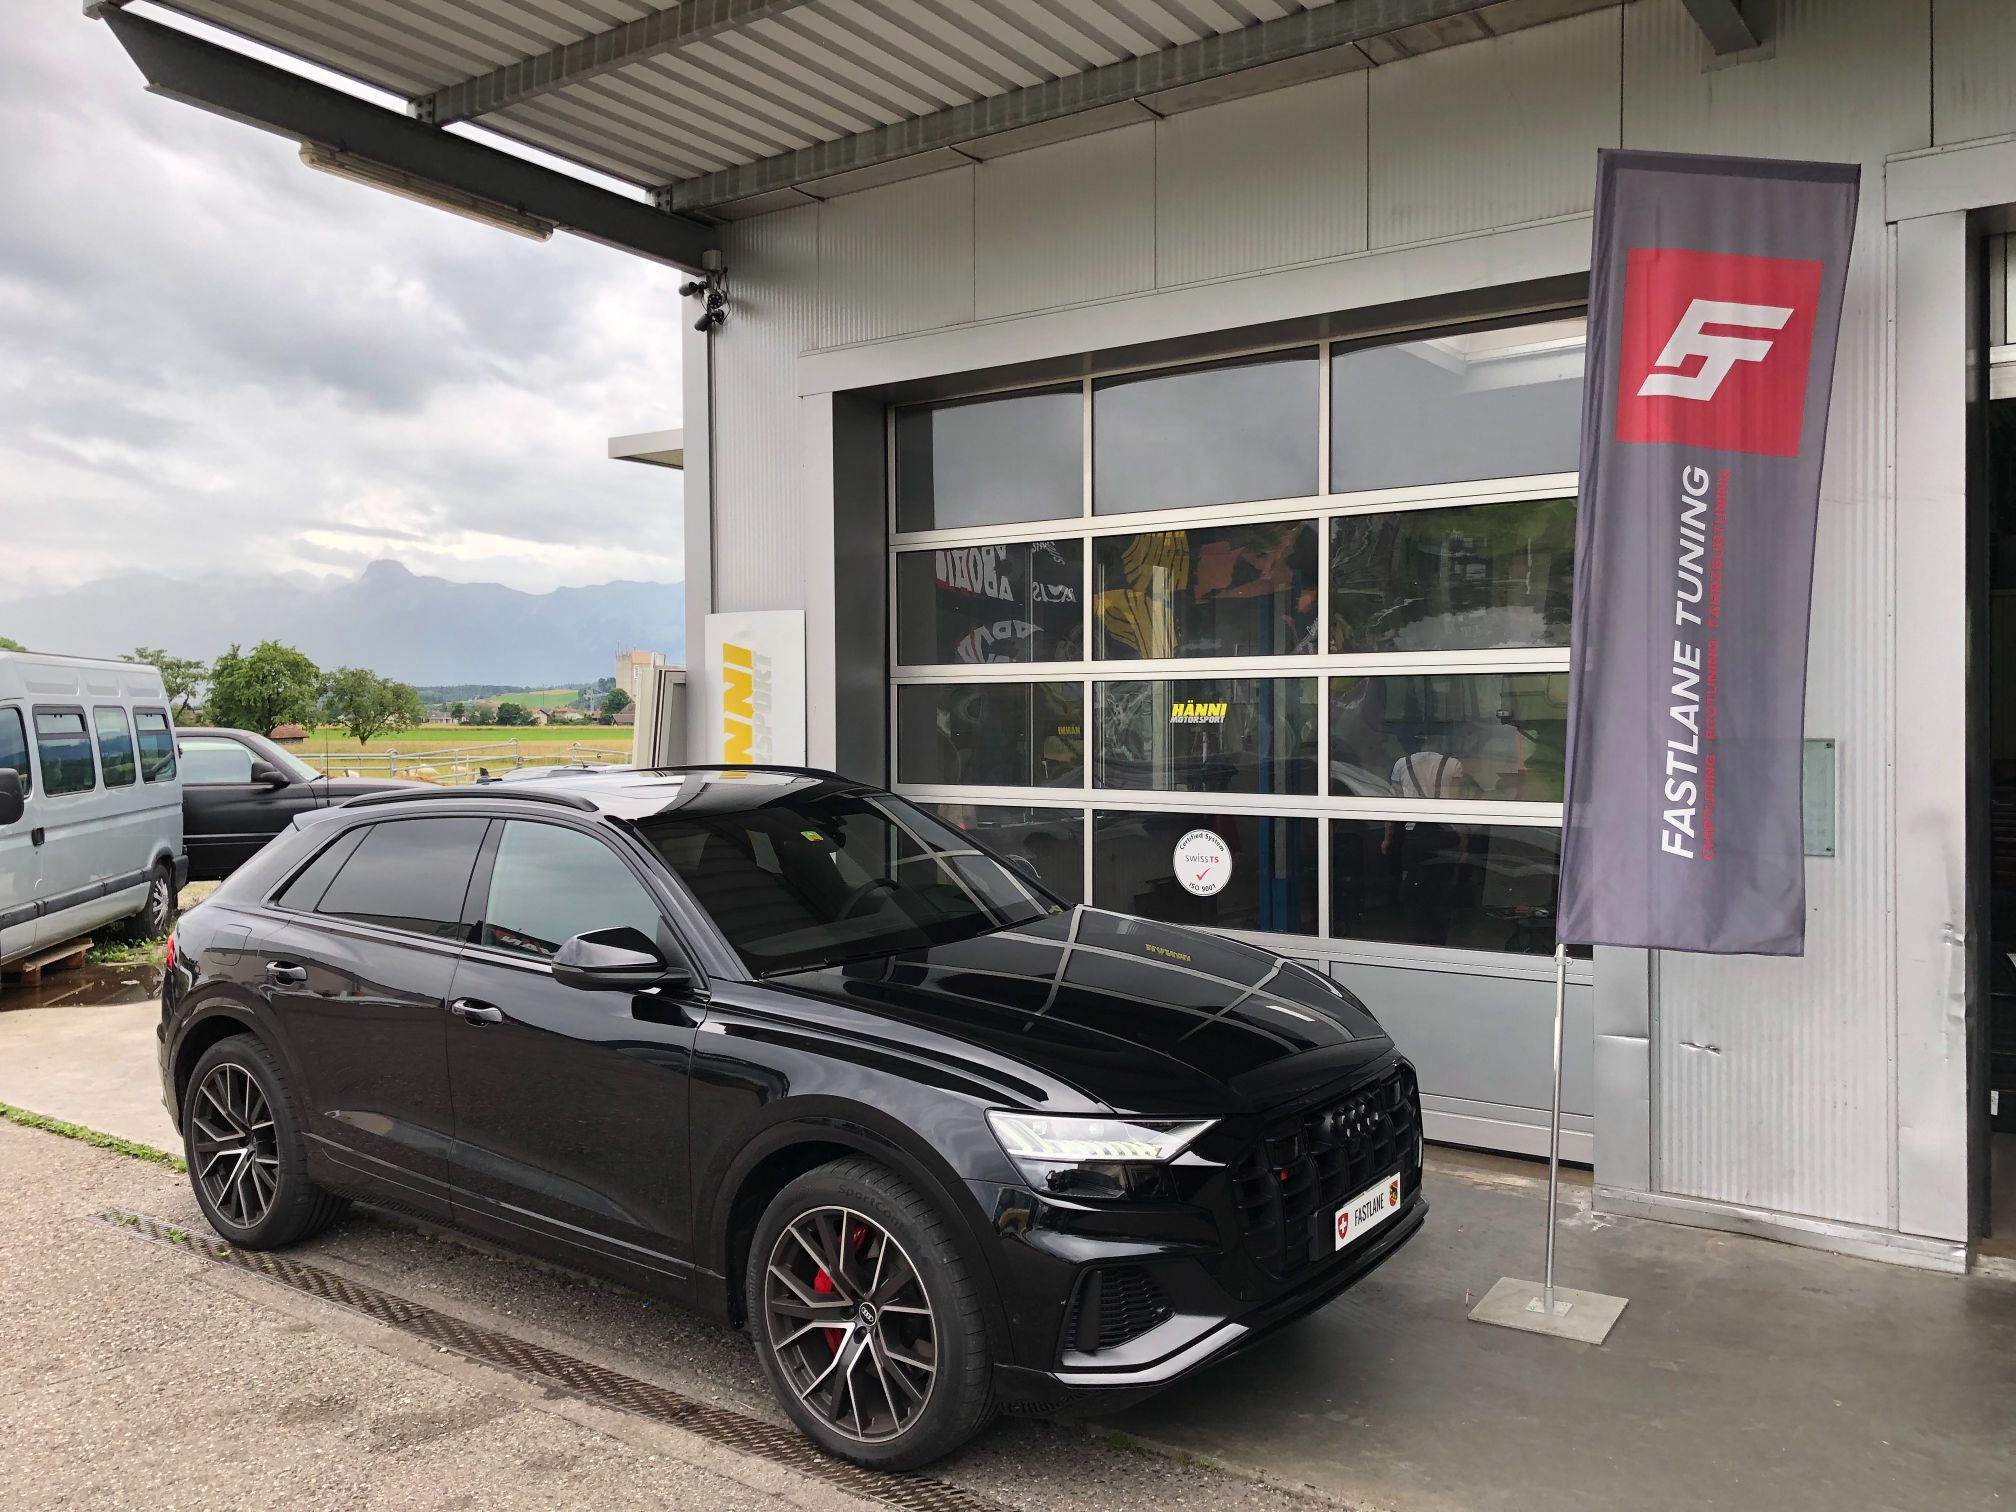 Ein schwarzer Audi SQ8 V8 4.0 Liter mit Doppelturboaufladung steht vor der Garage neben der Fastlane Tuning Schweiz Flagge